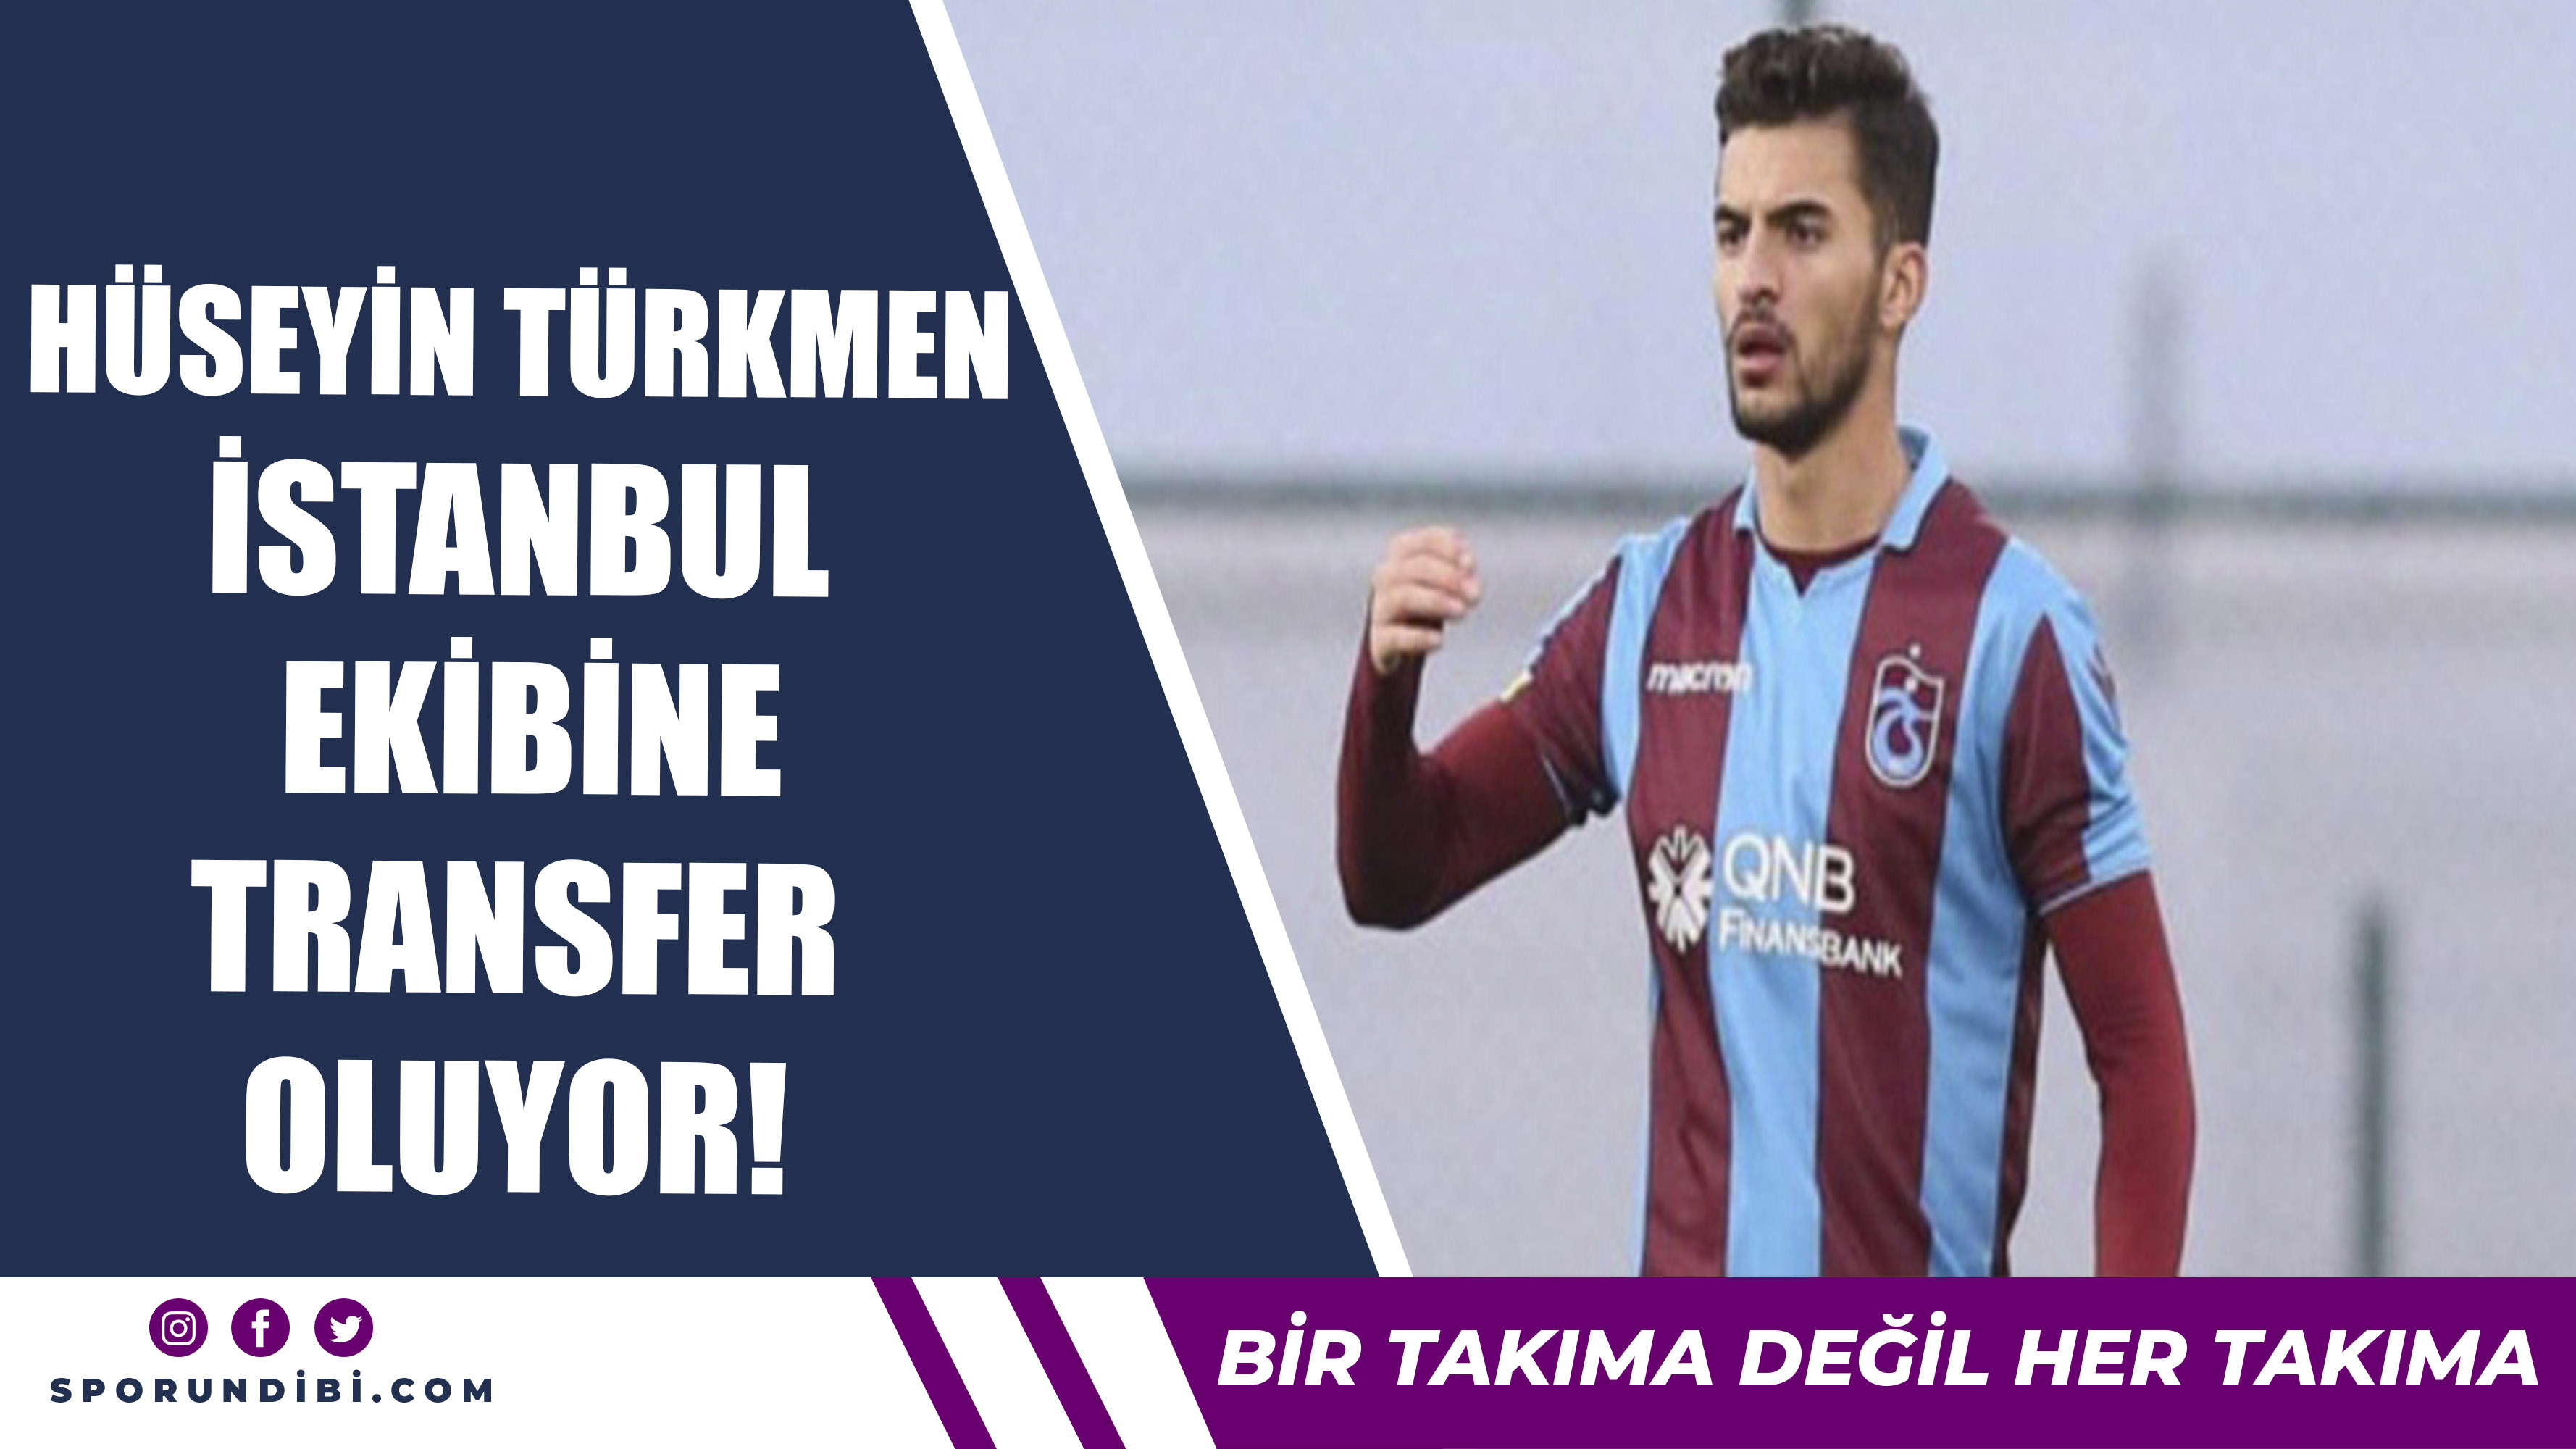 Hüseyin Türkmen İstanbul Ekibine Transfer Oluyor!